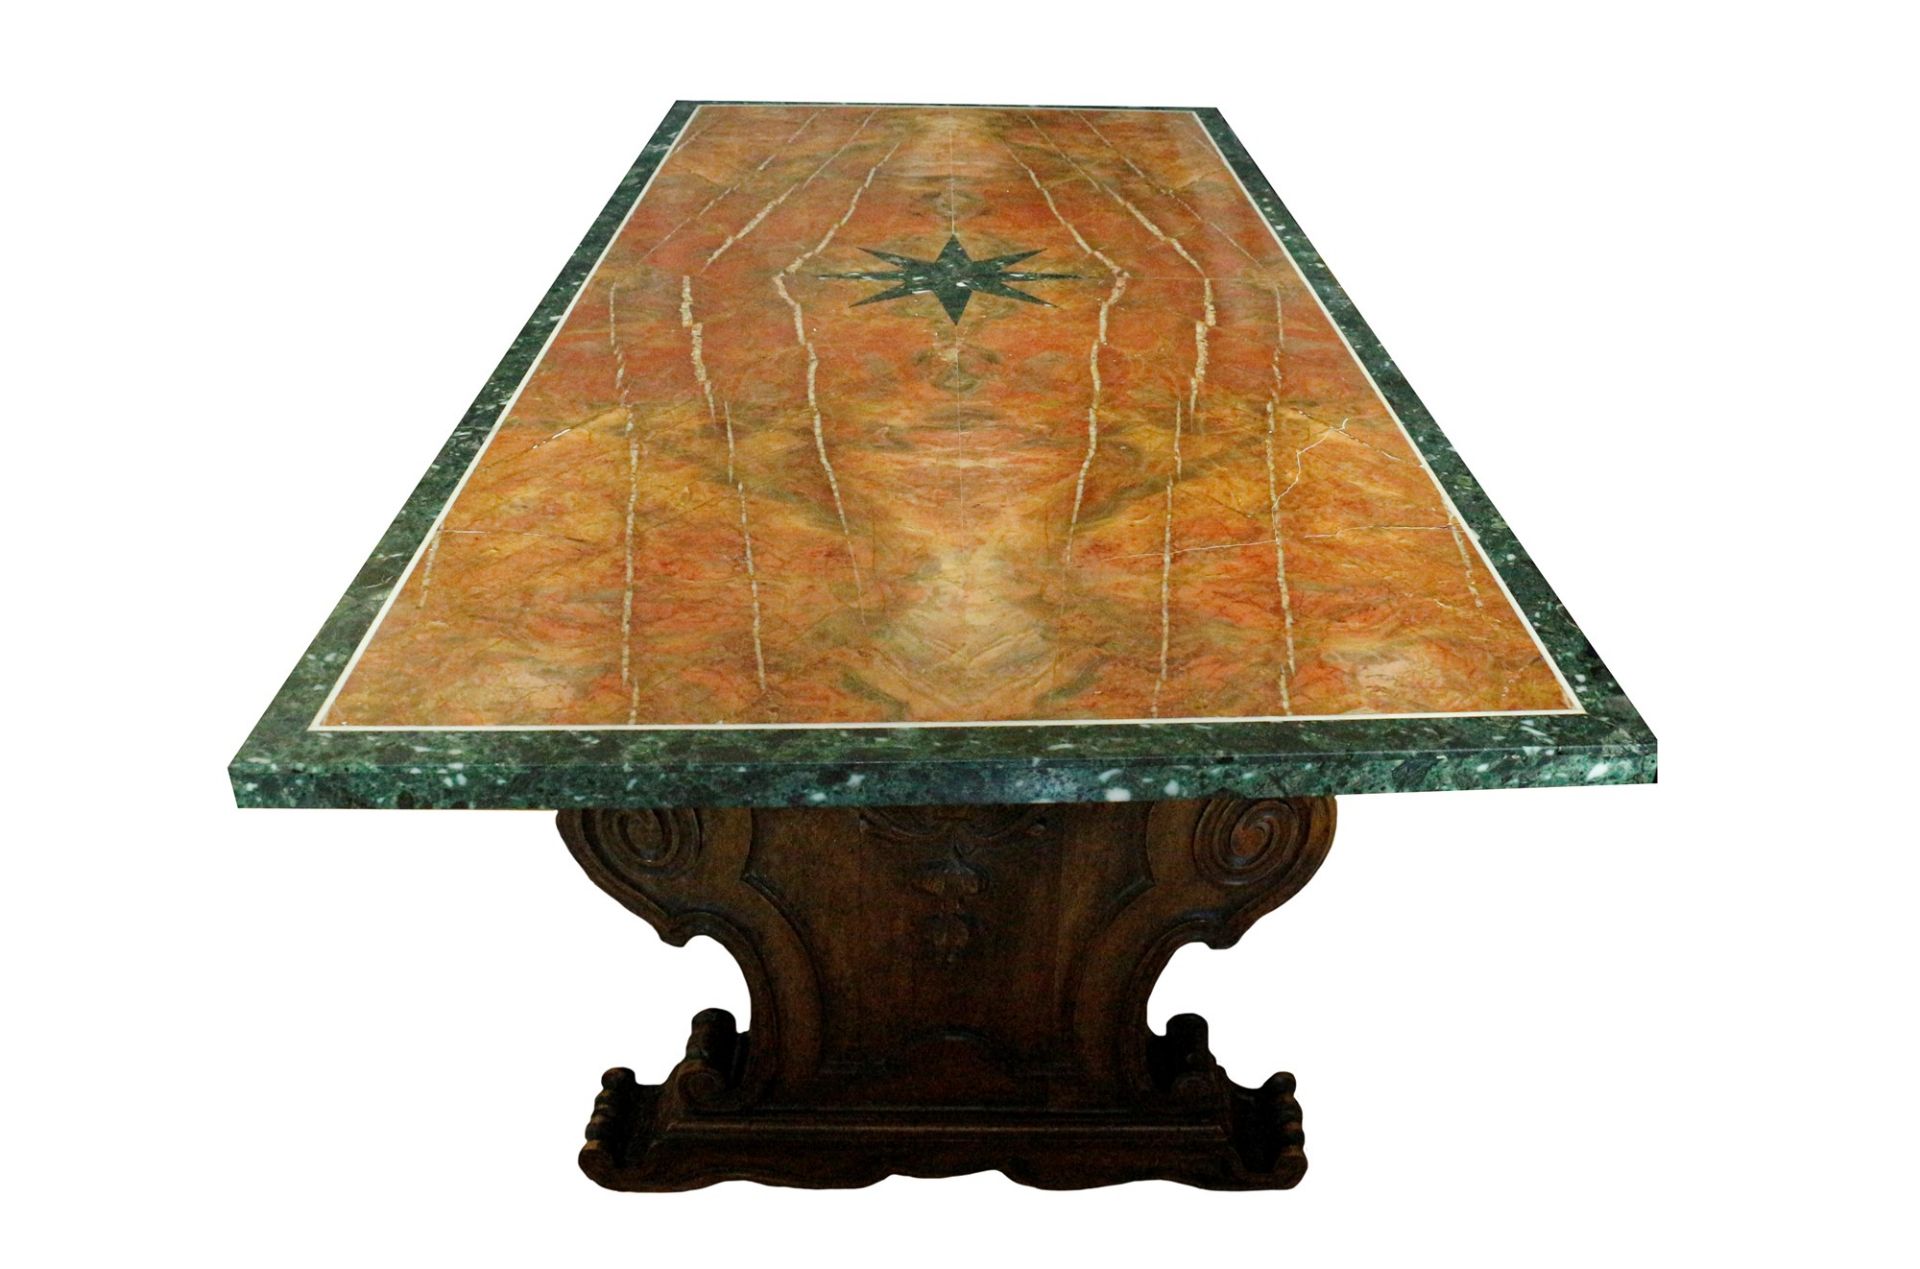 Grande tavolo con piano lastronato in marmo diaspro rosso di Numidia e cornice in marmo verde. Decor - Image 2 of 2